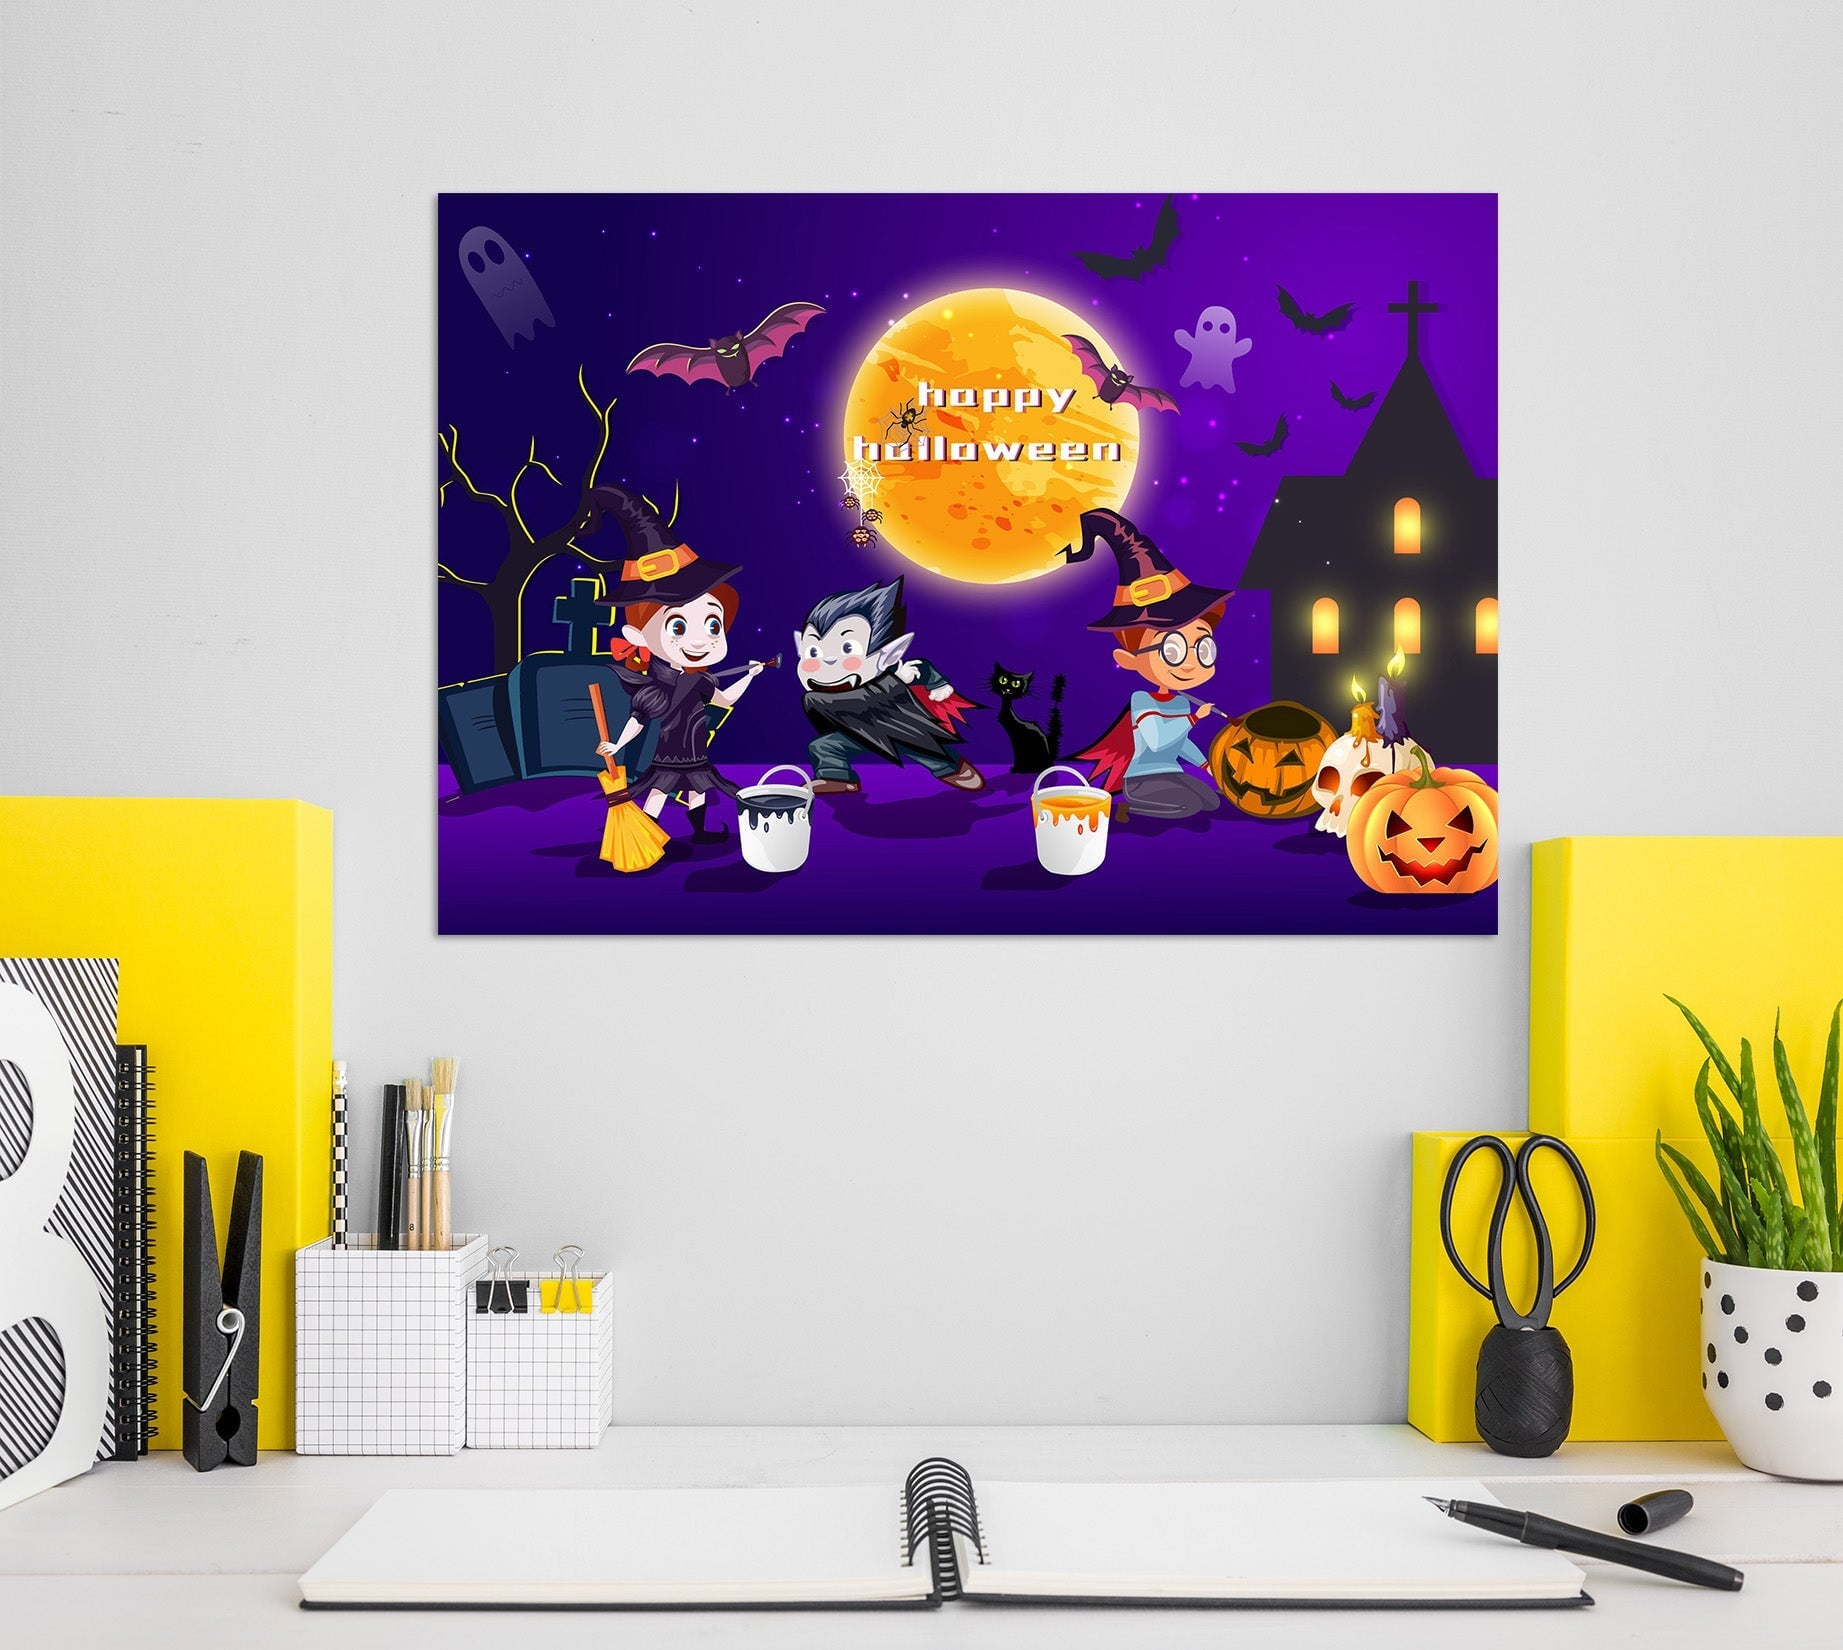 3D Girl Paints Pumpkin 008 Halloween Wall Stickers Wallpaper AJ Wallpaper 2 